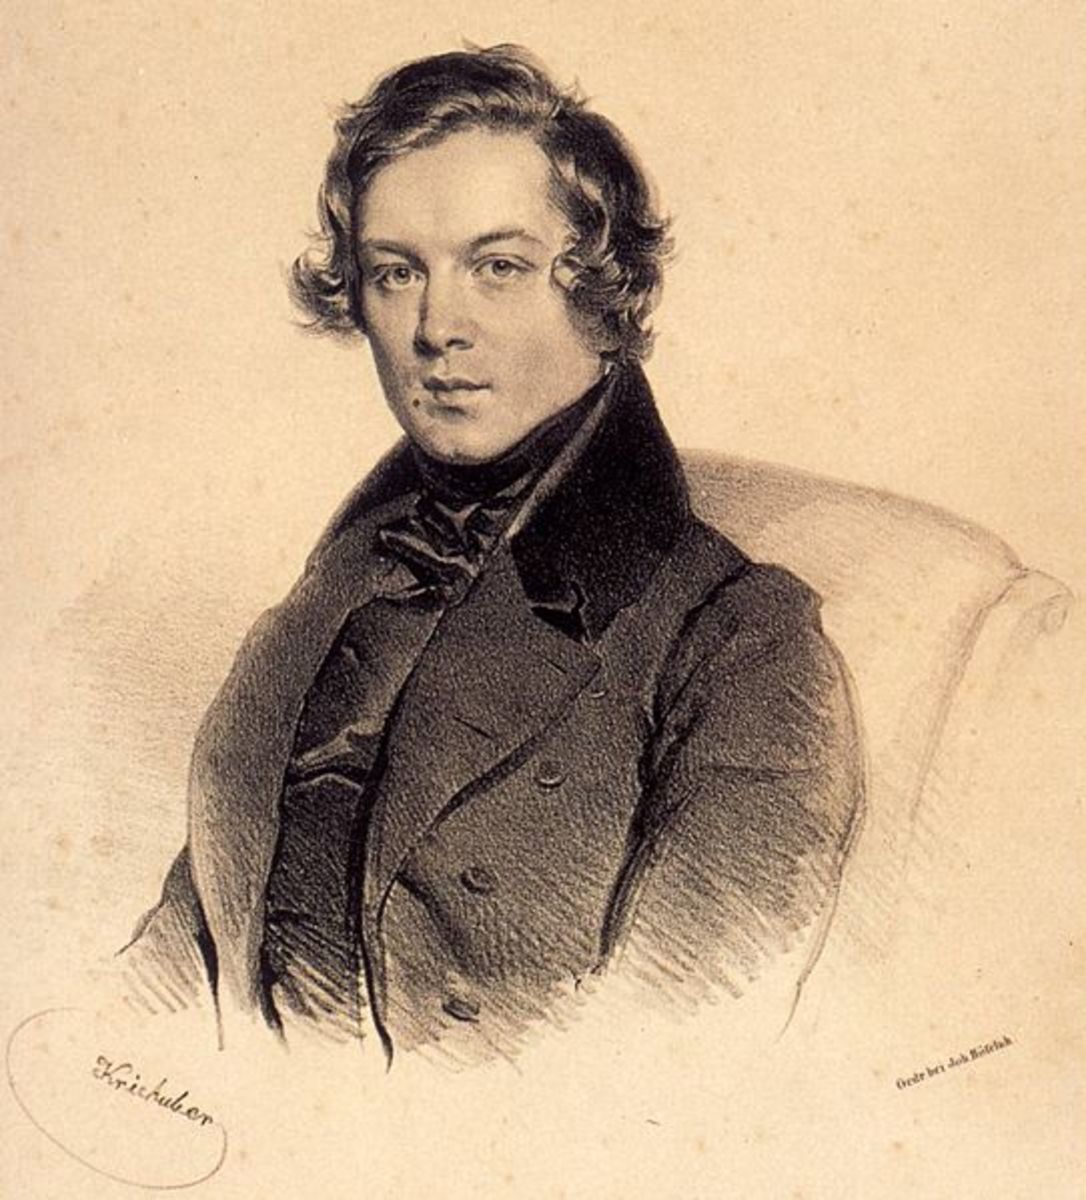 A lithograph of Robert Schumann